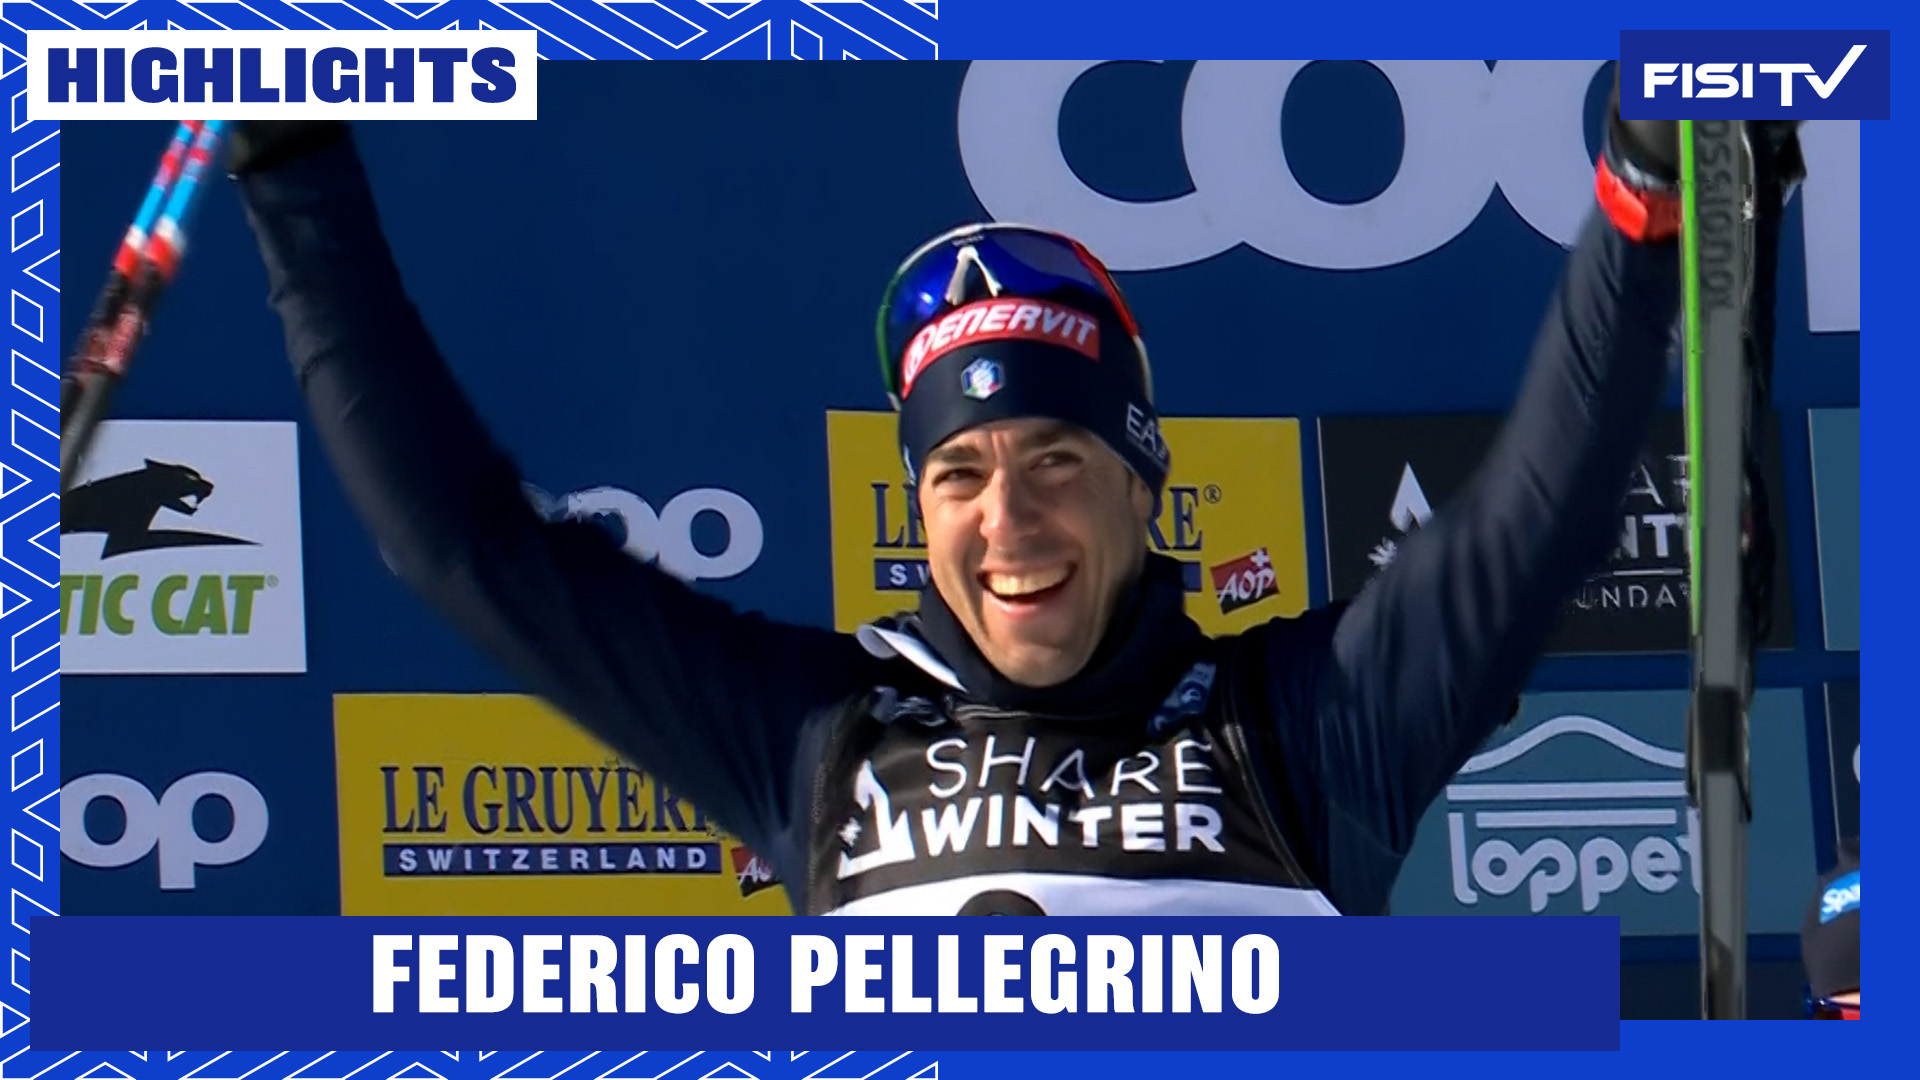 Federico Pellegrino torna sul podio nella sprint di Minneapolis | FISI TV